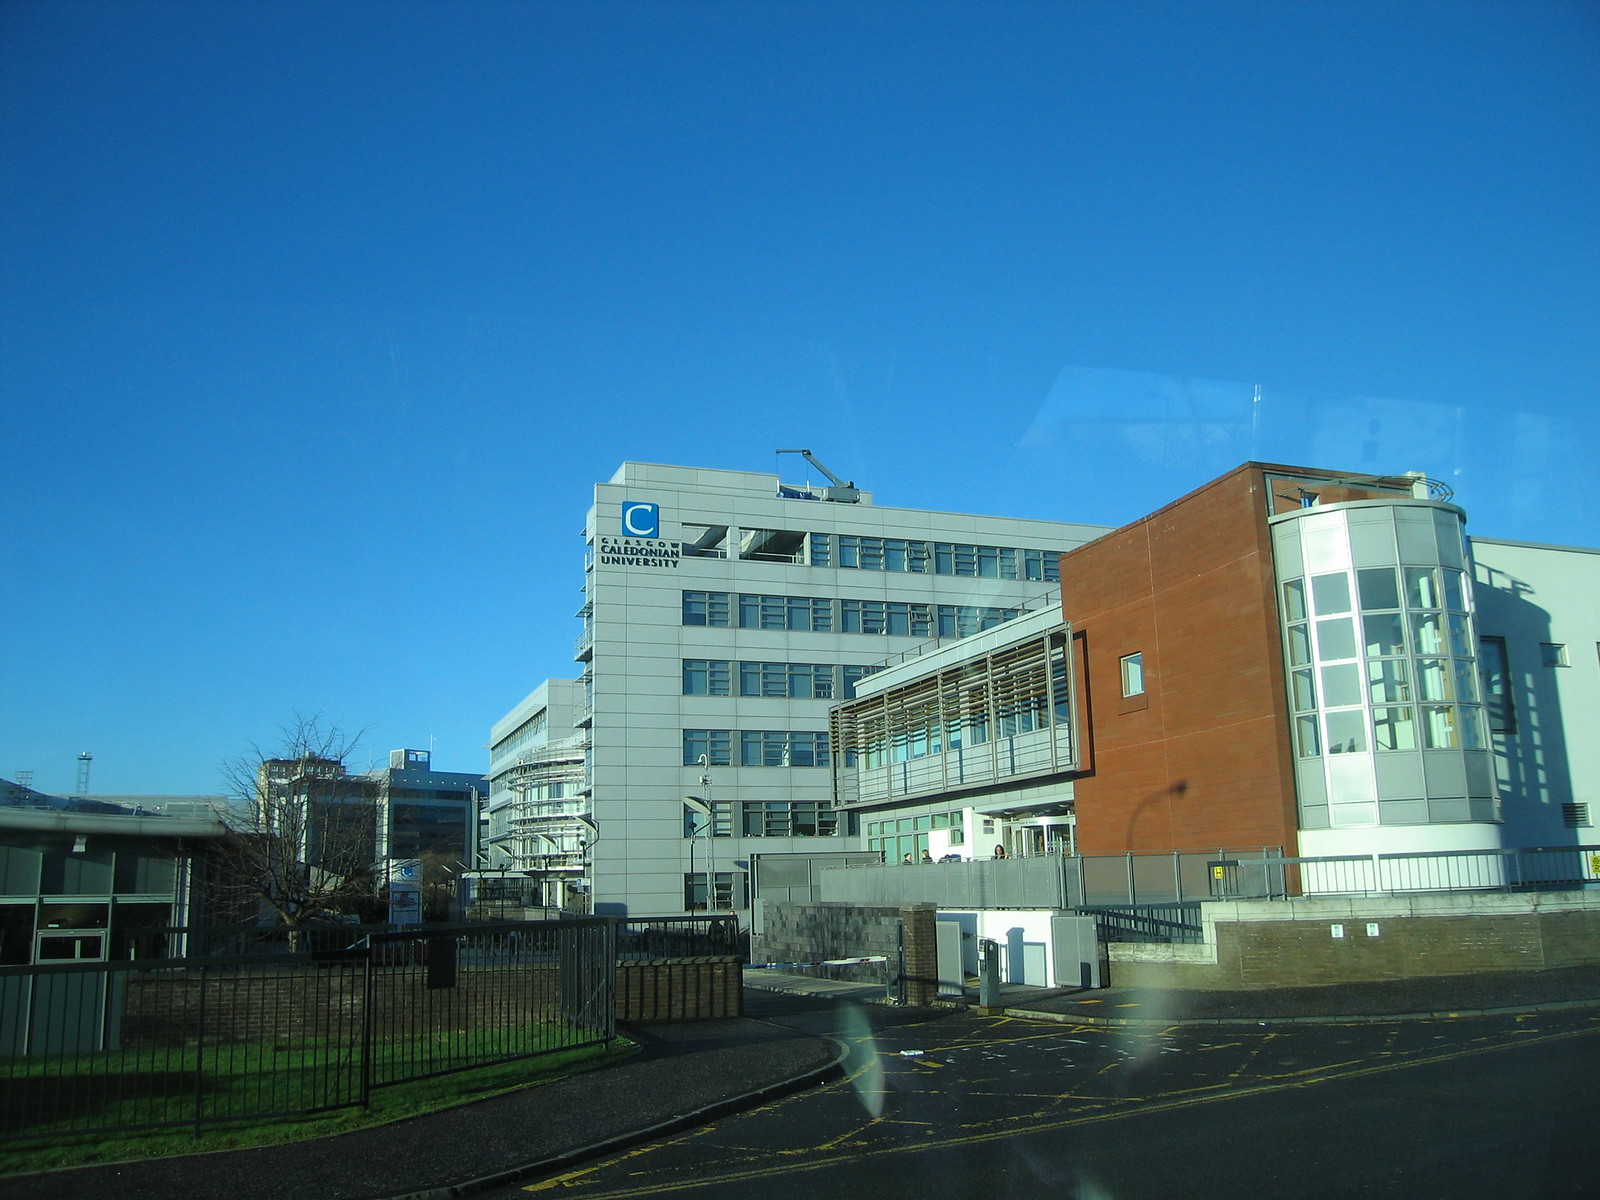 1 Glasgow Caledonian University